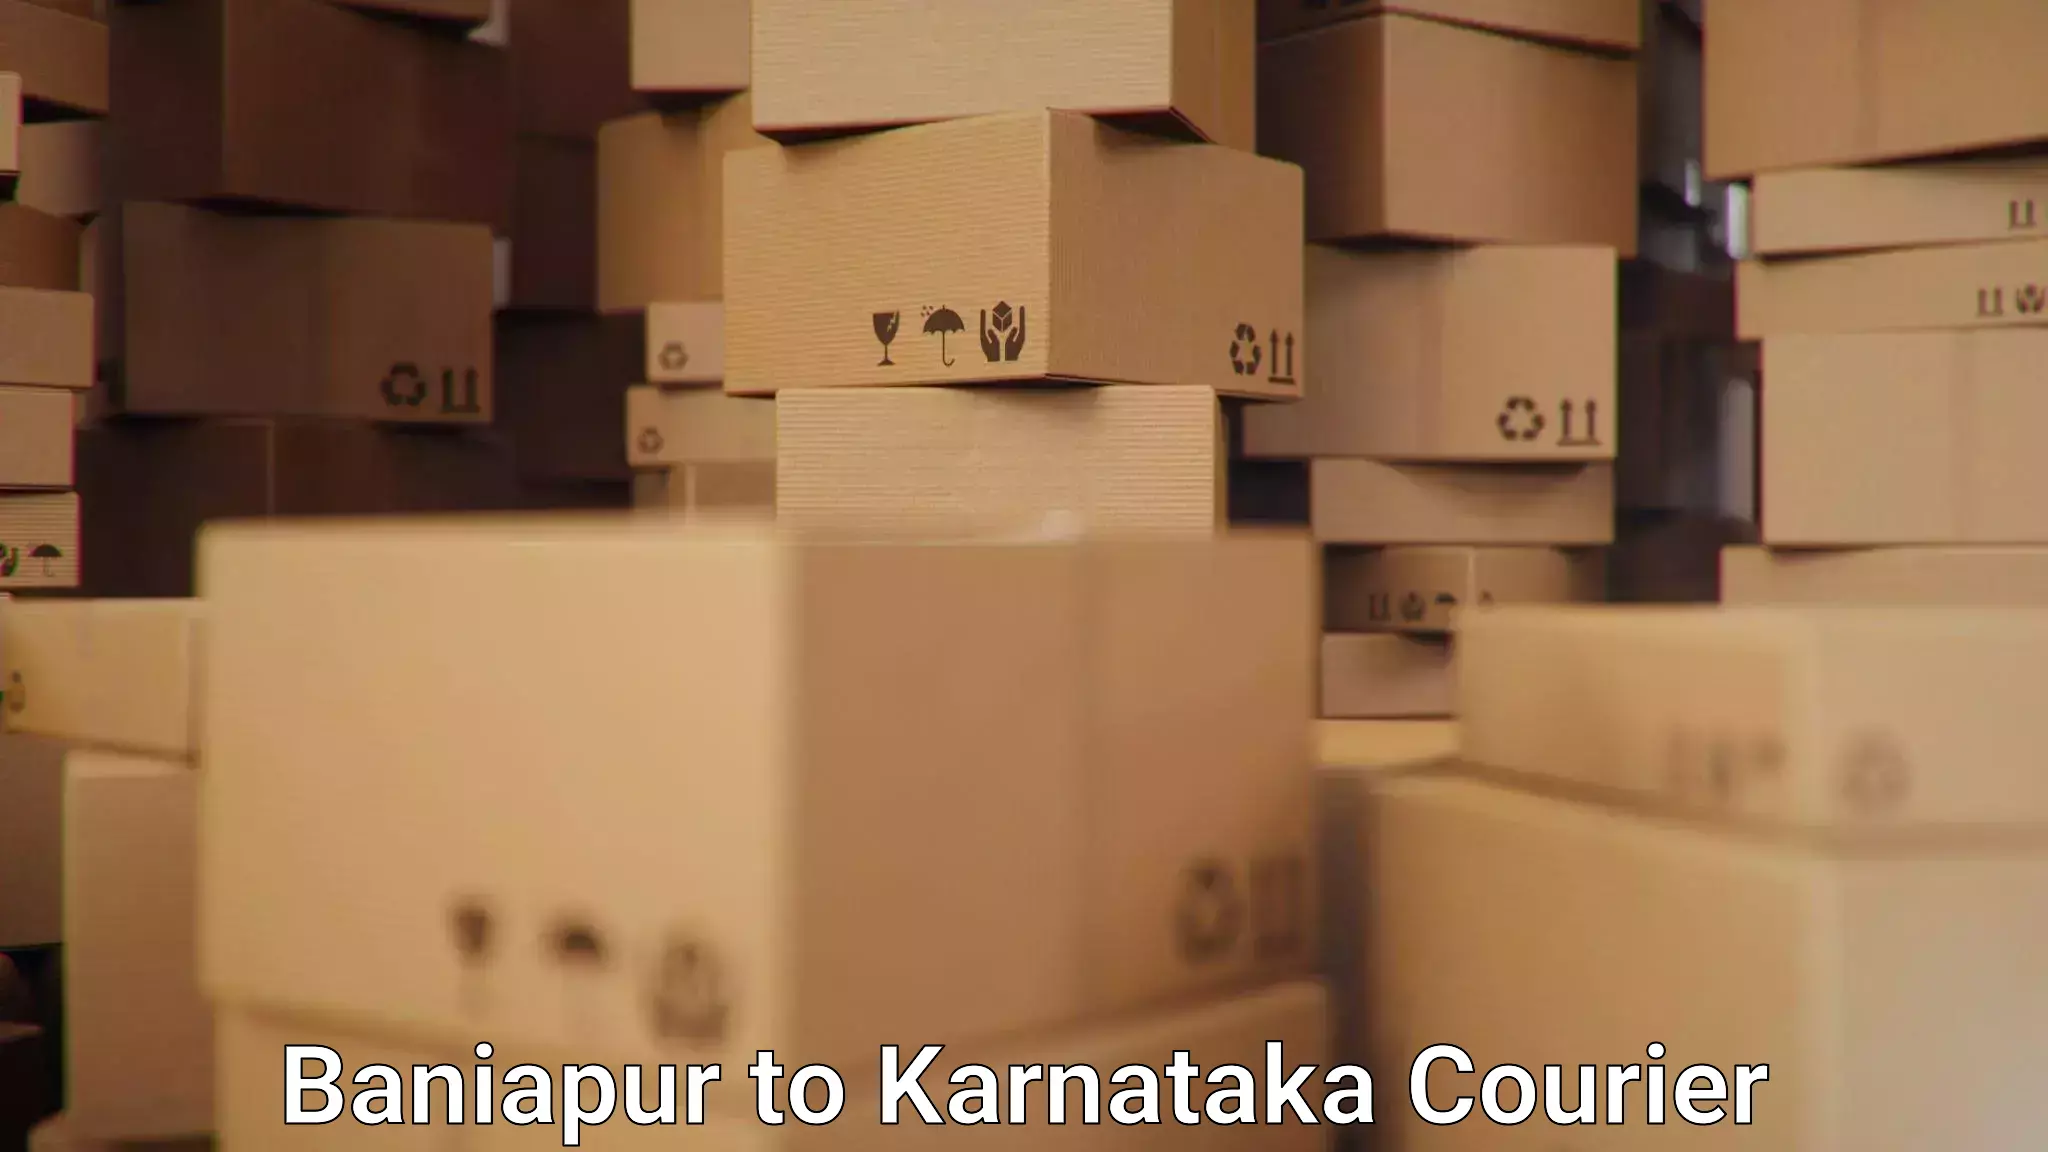 Pharmaceutical courier Baniapur to Turuvekere